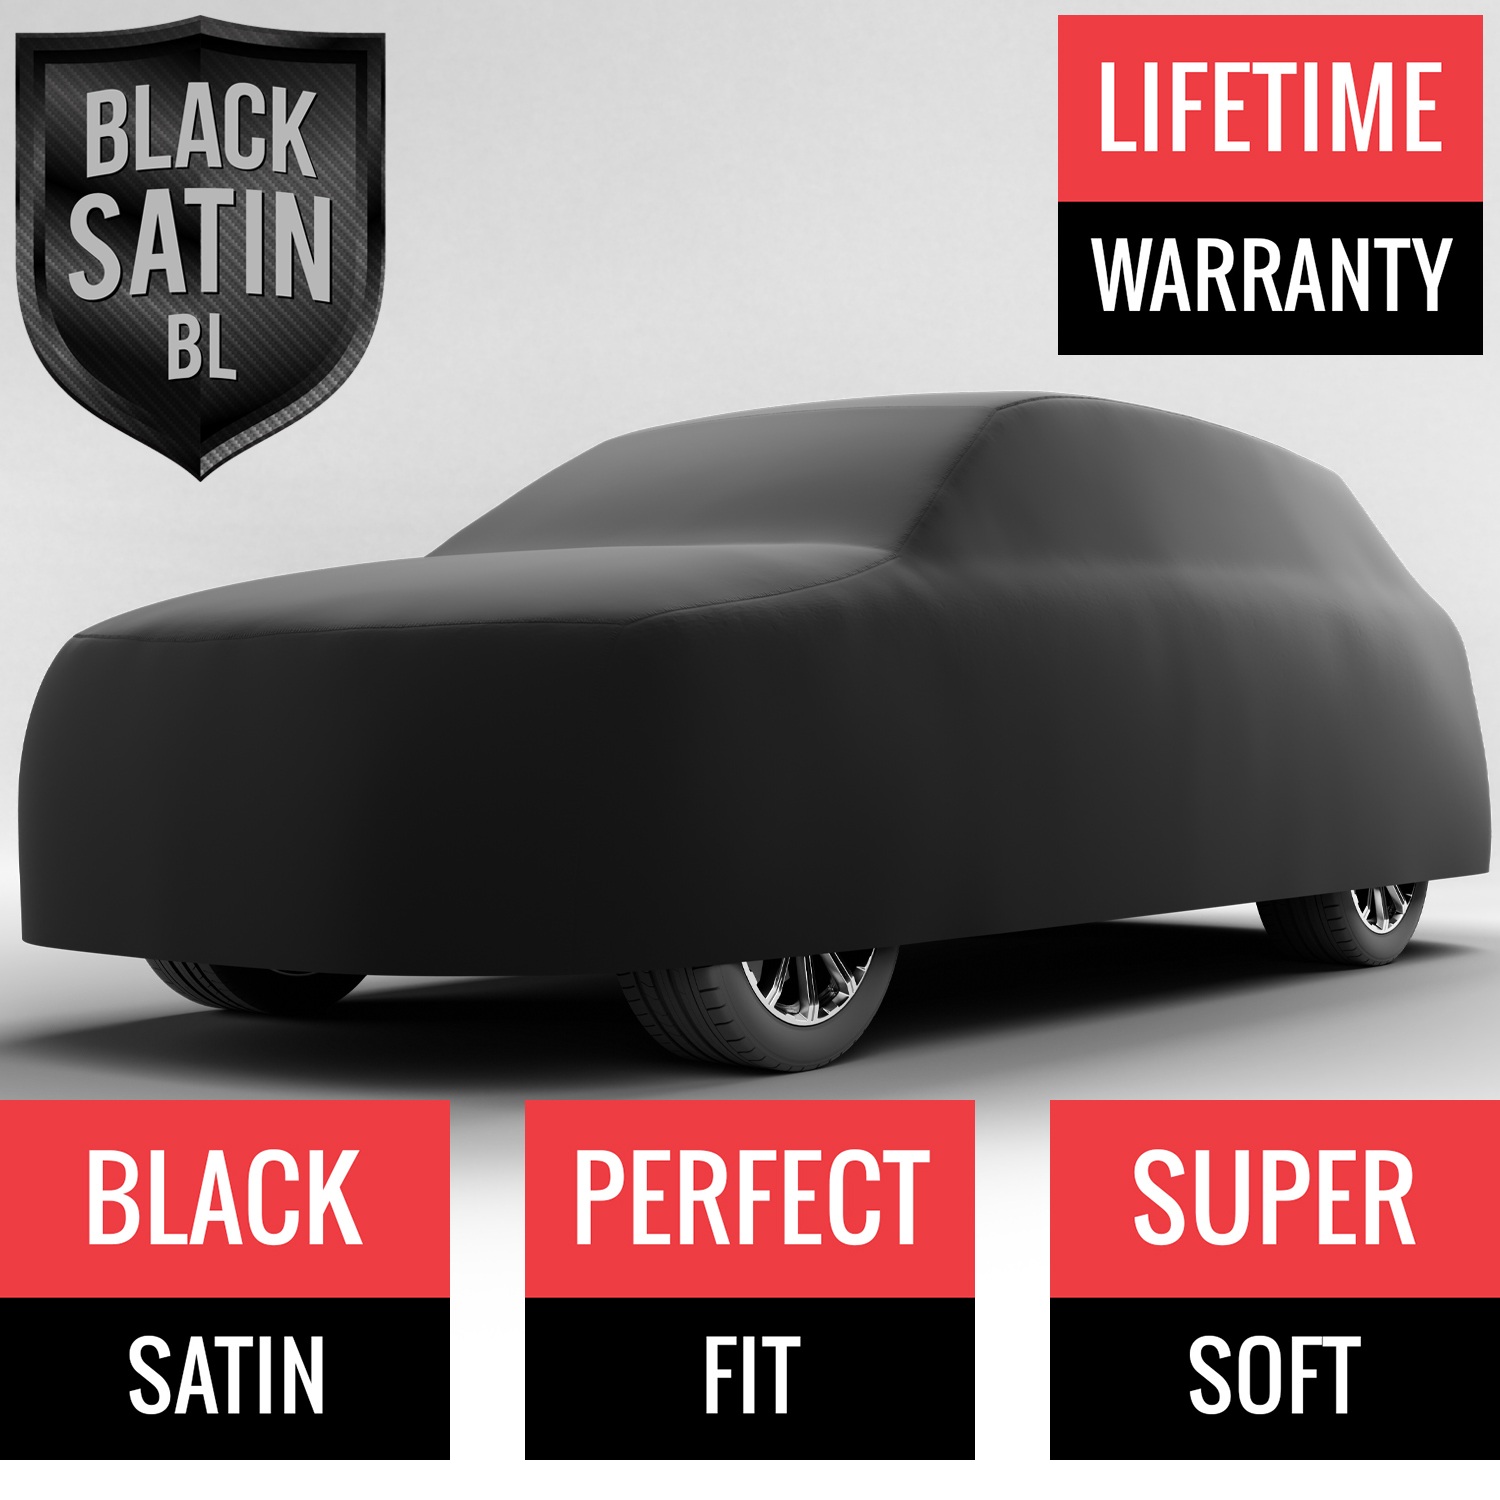 Black Satin BL - Black Car Cover for Bentley Bentayga 2017 SUV 4-Door